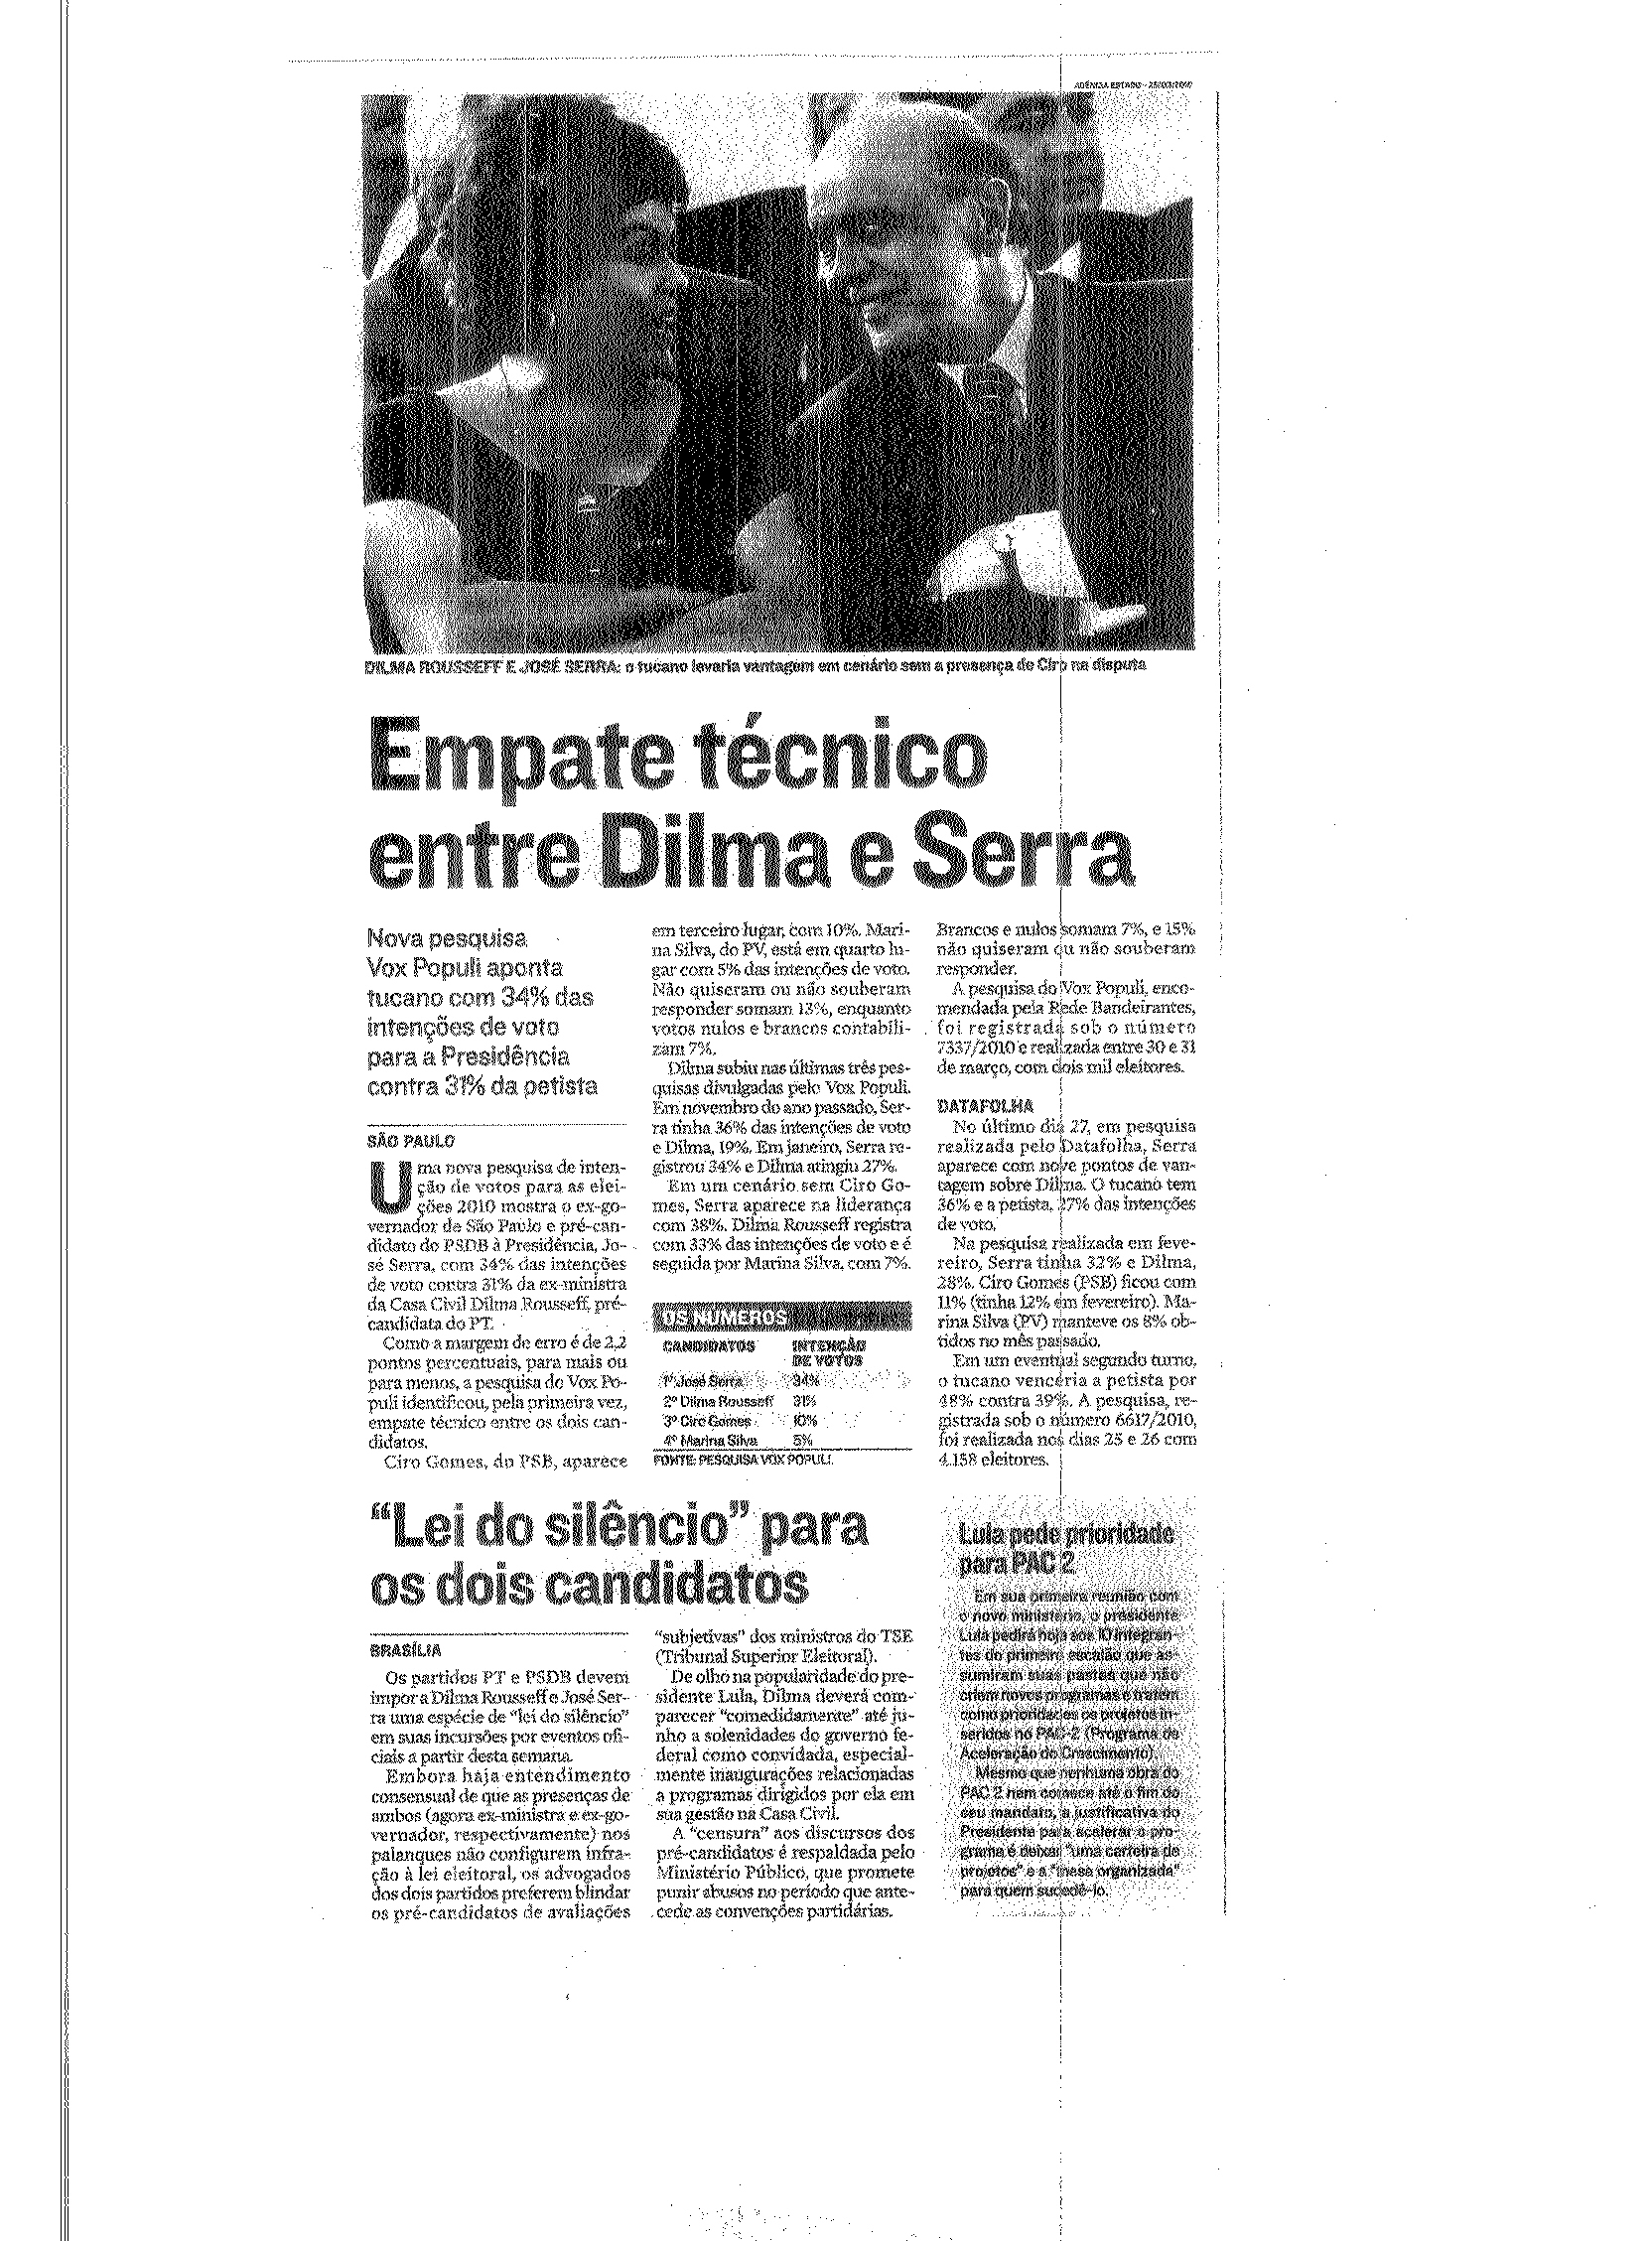 Empate técnico entre Dilma e Serra